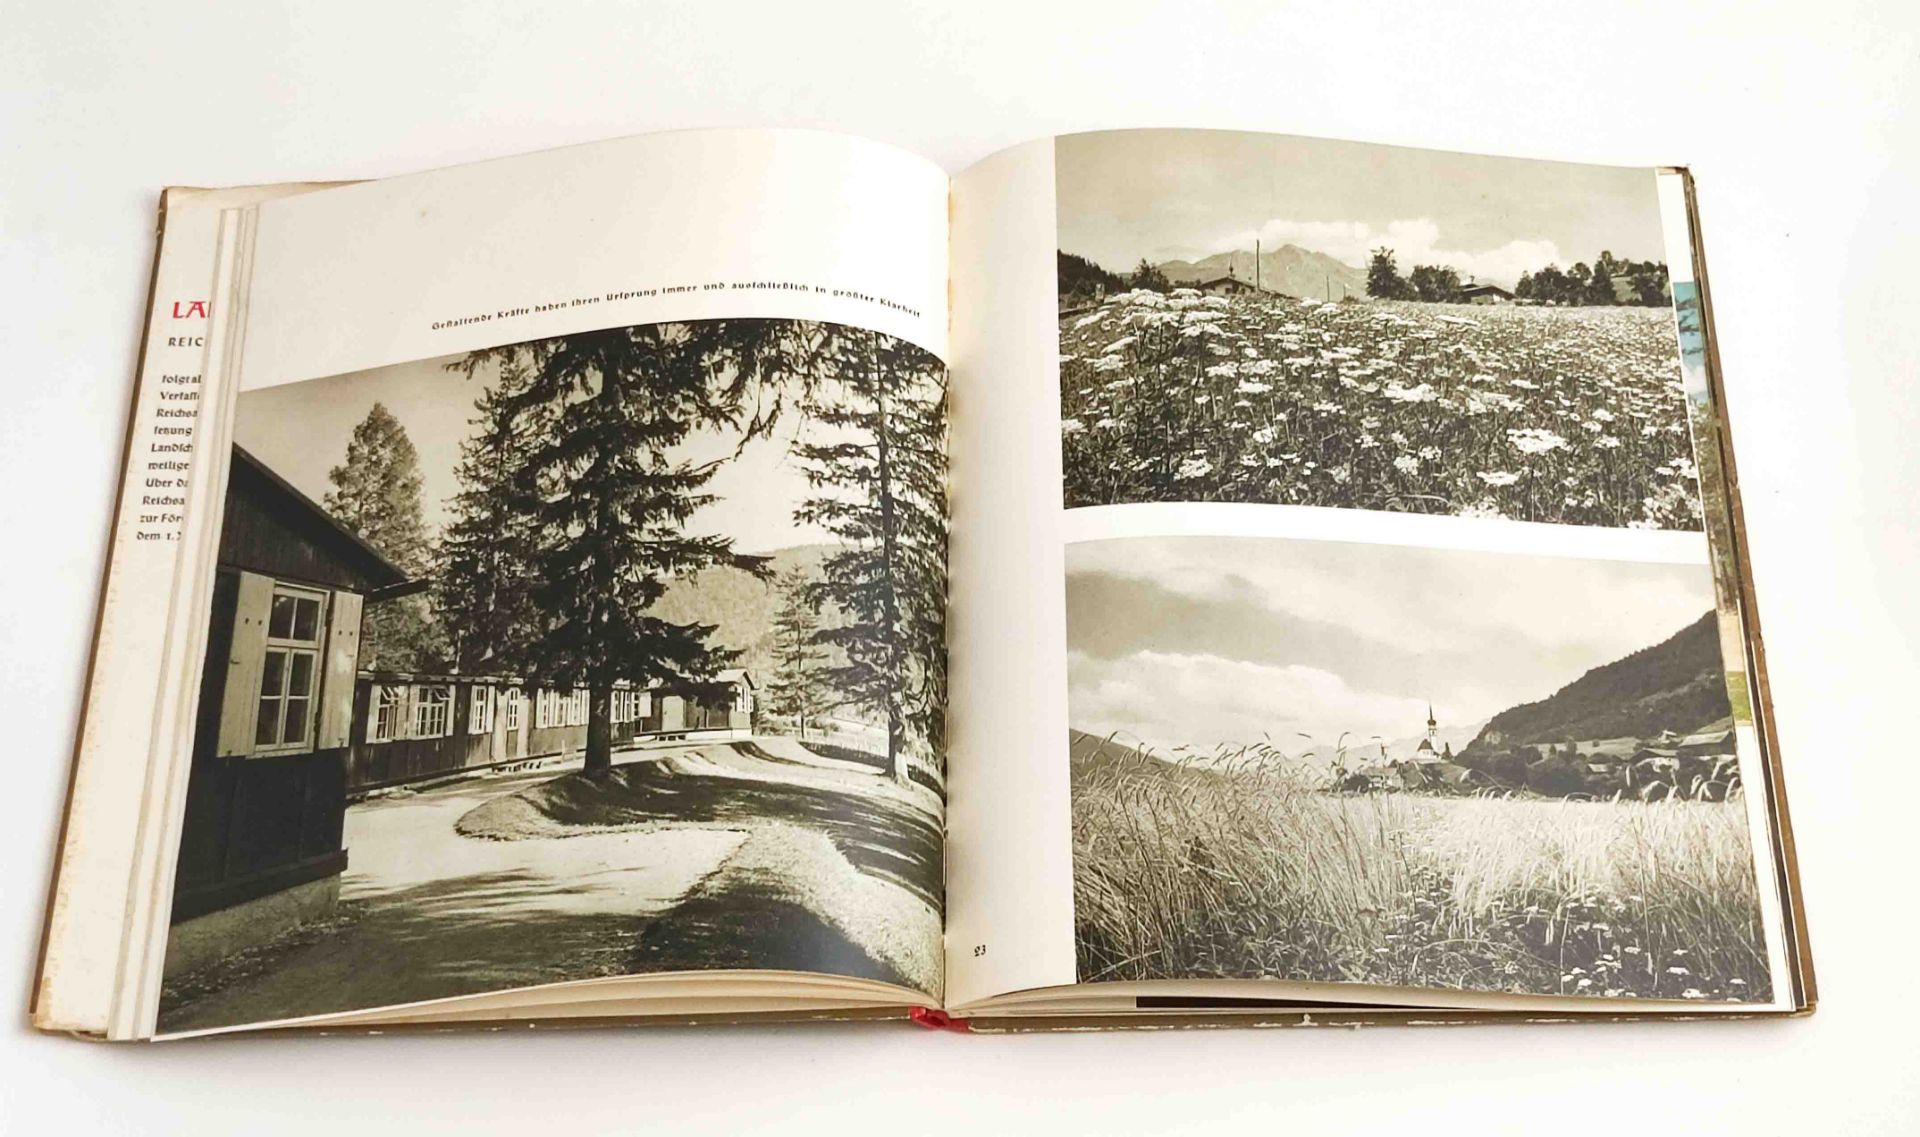 WKII Buch Holzhaus im Landschaftsraum - Image 2 of 3